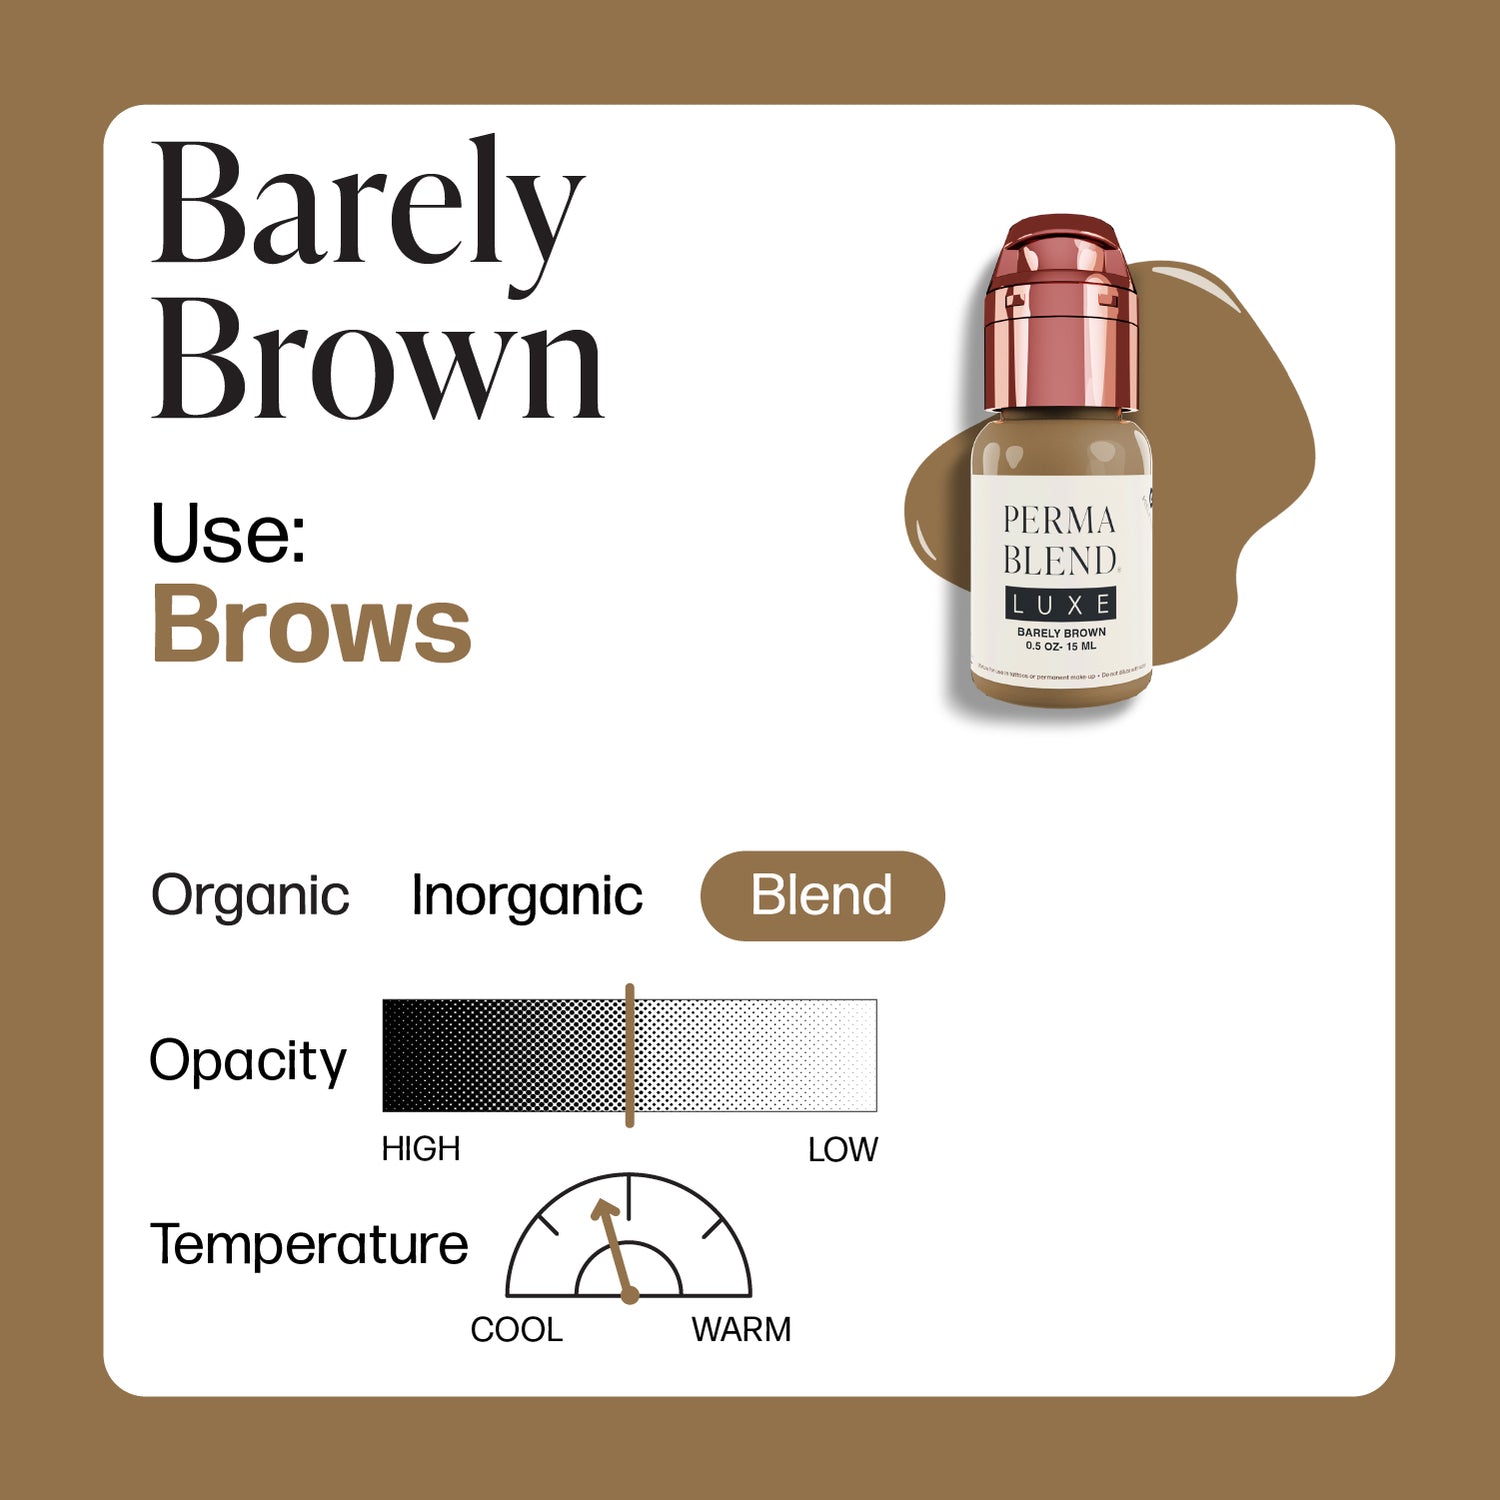 Kallos-Barley Brown - Perma Blend Luxe